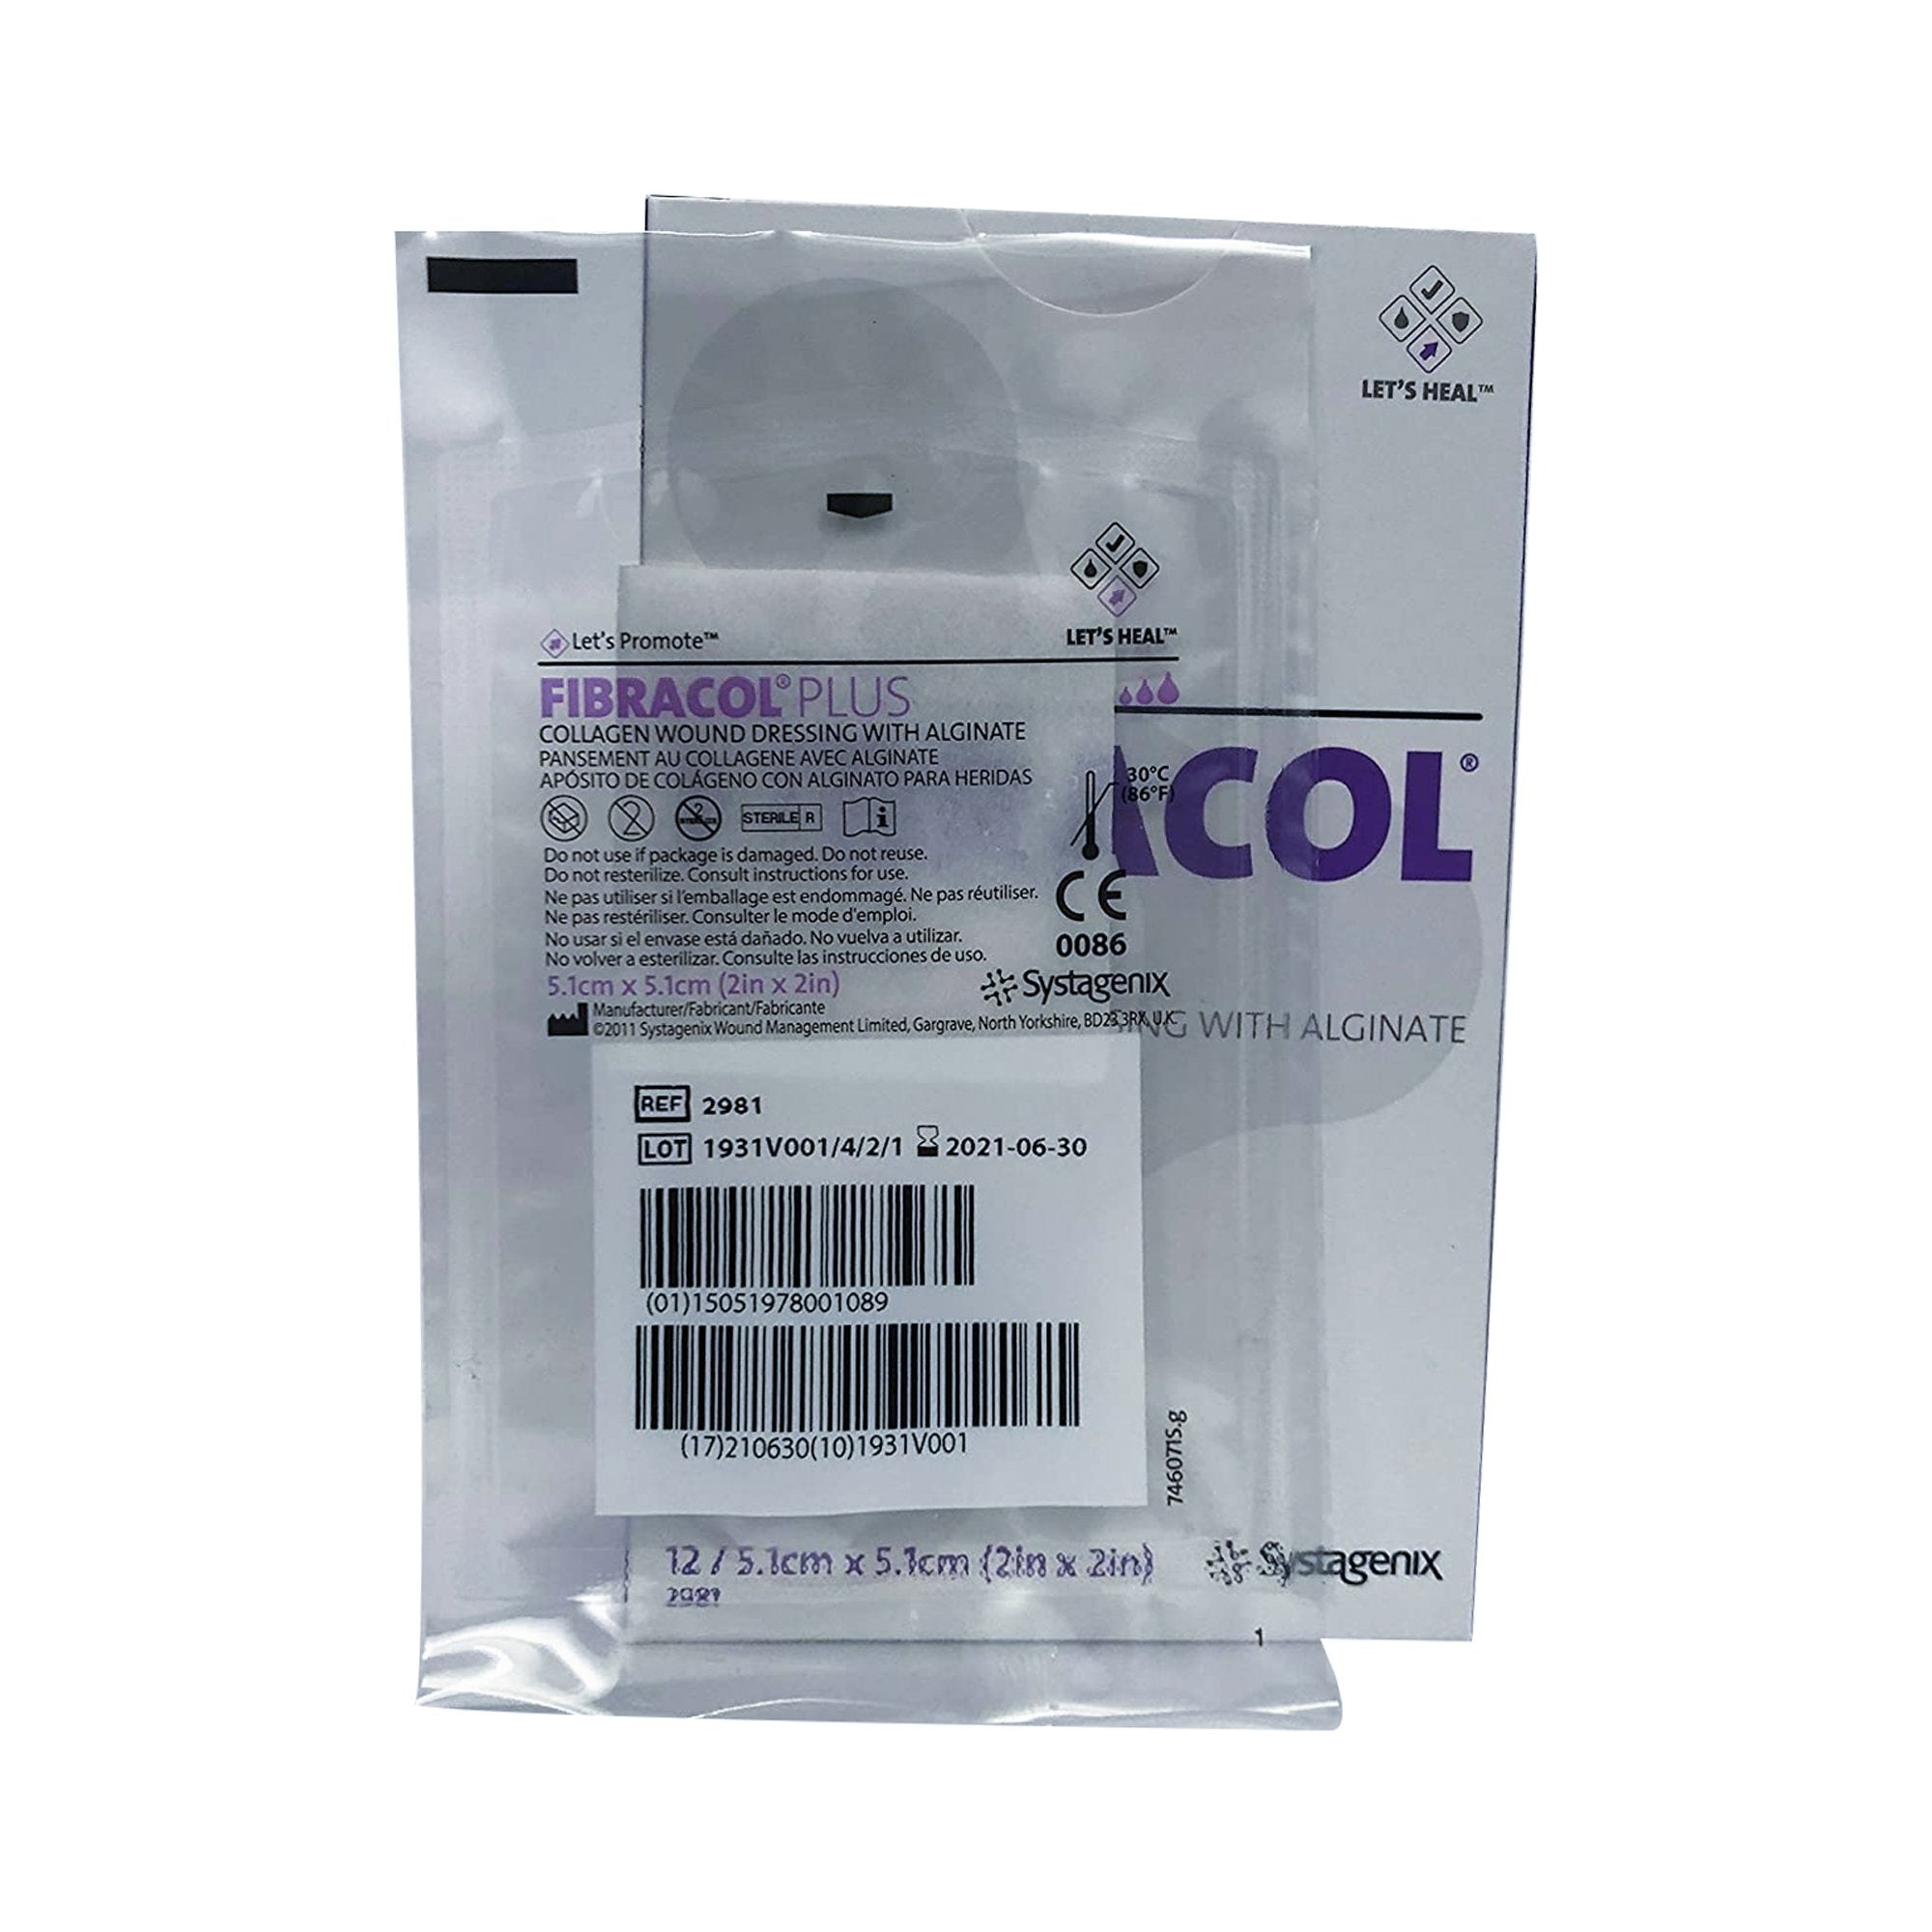 Collagen Dressing Fibracol™ Plus 2 X 2 Inch Square Sterile